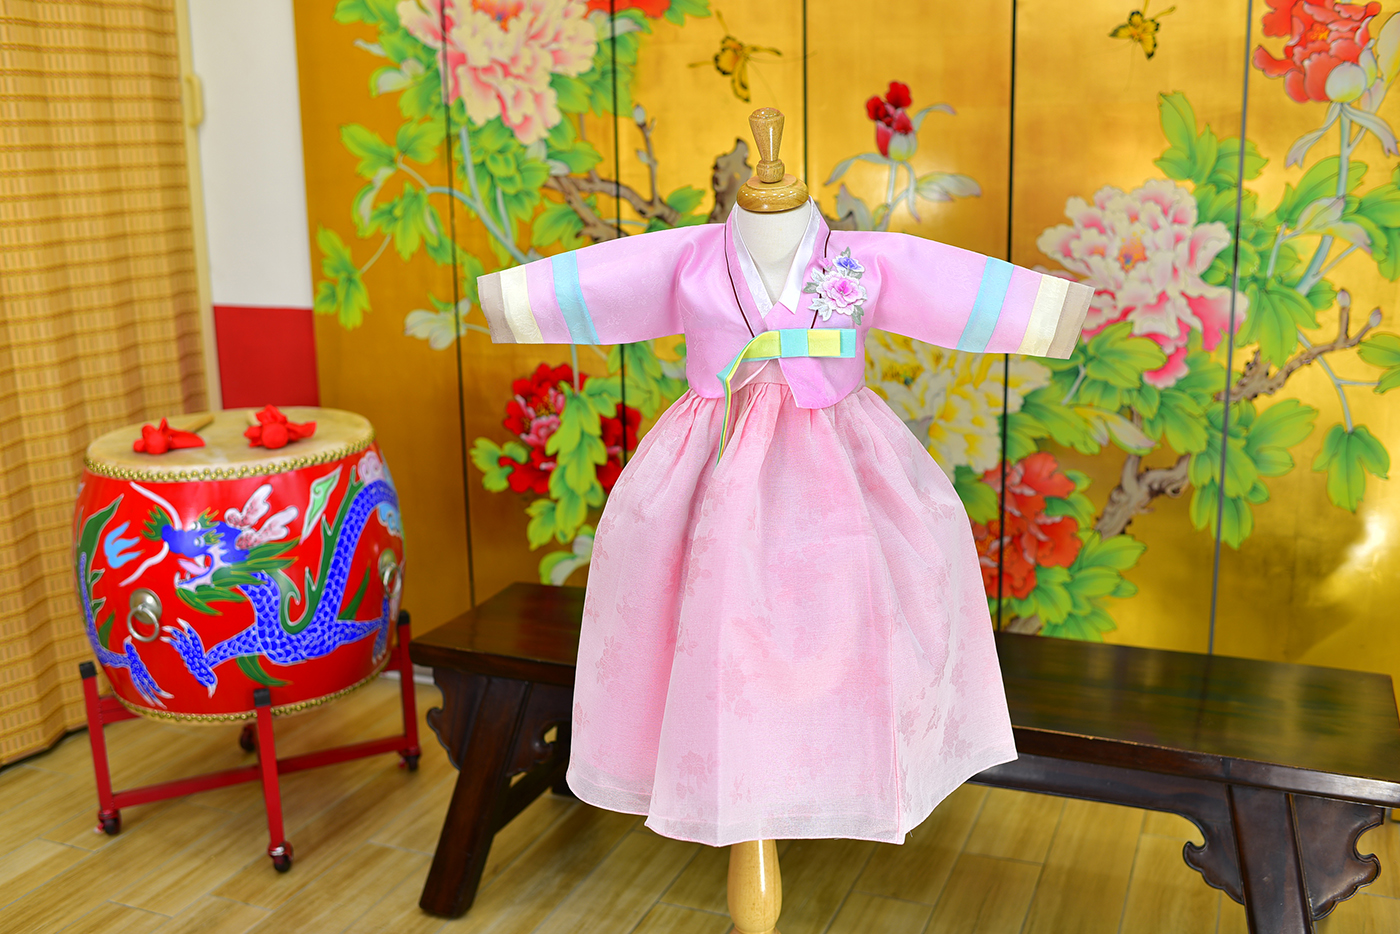 2023-11-24小孩宮廷韓服禮服照。仙氣款式  珊瑚粉系的新式韓服配色照片集